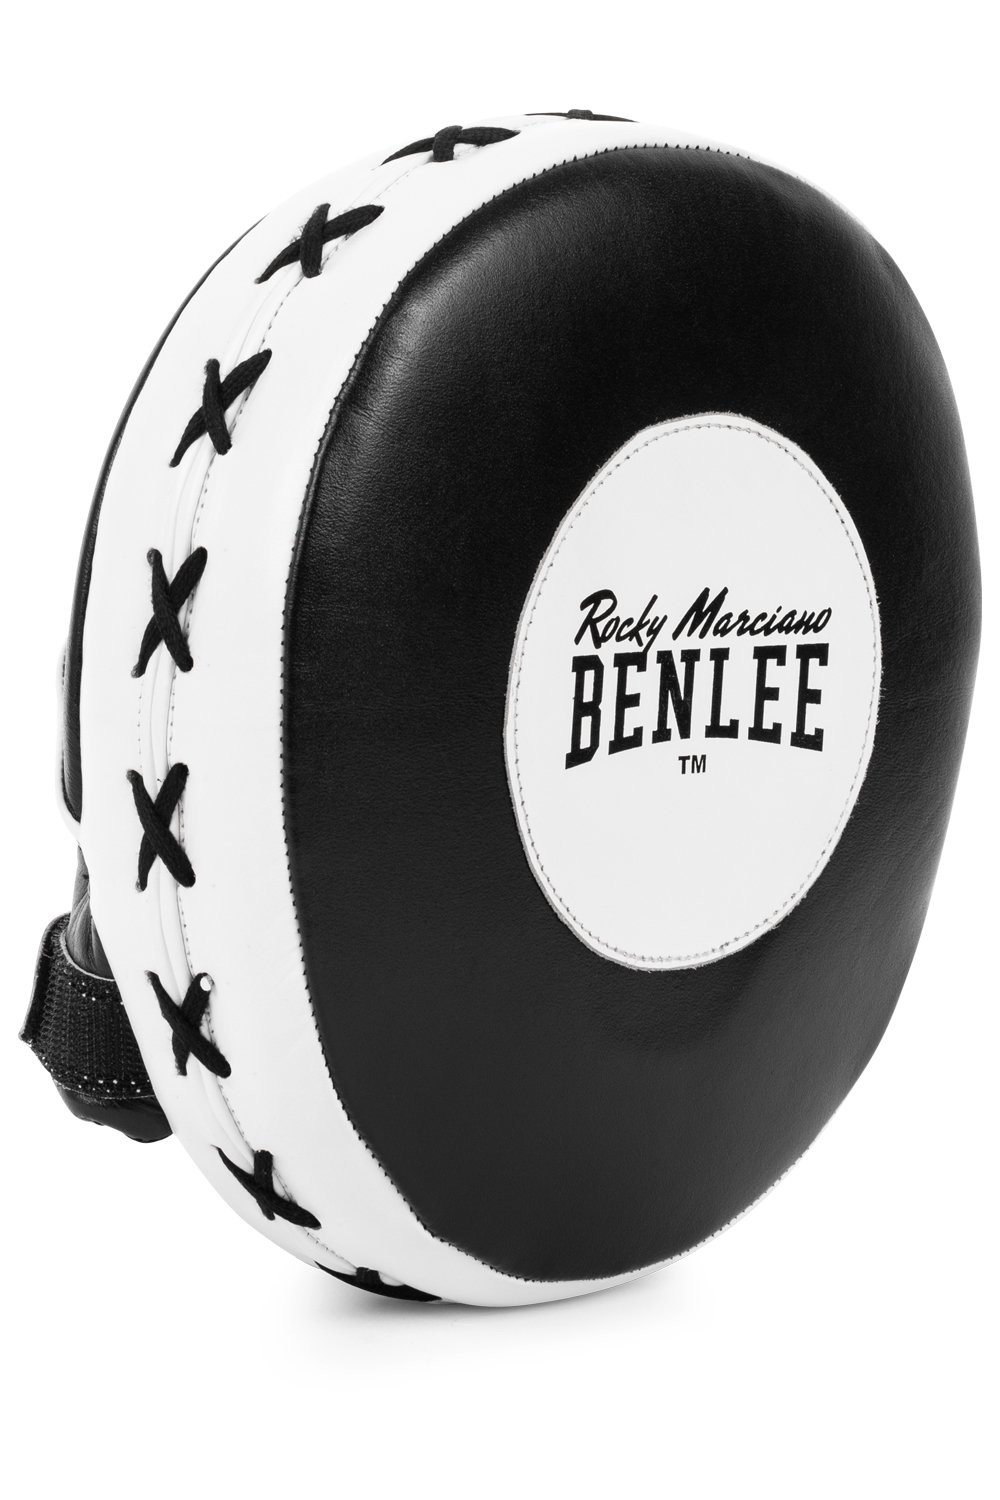 Benlee Leather hook & jab pad (1 pair)